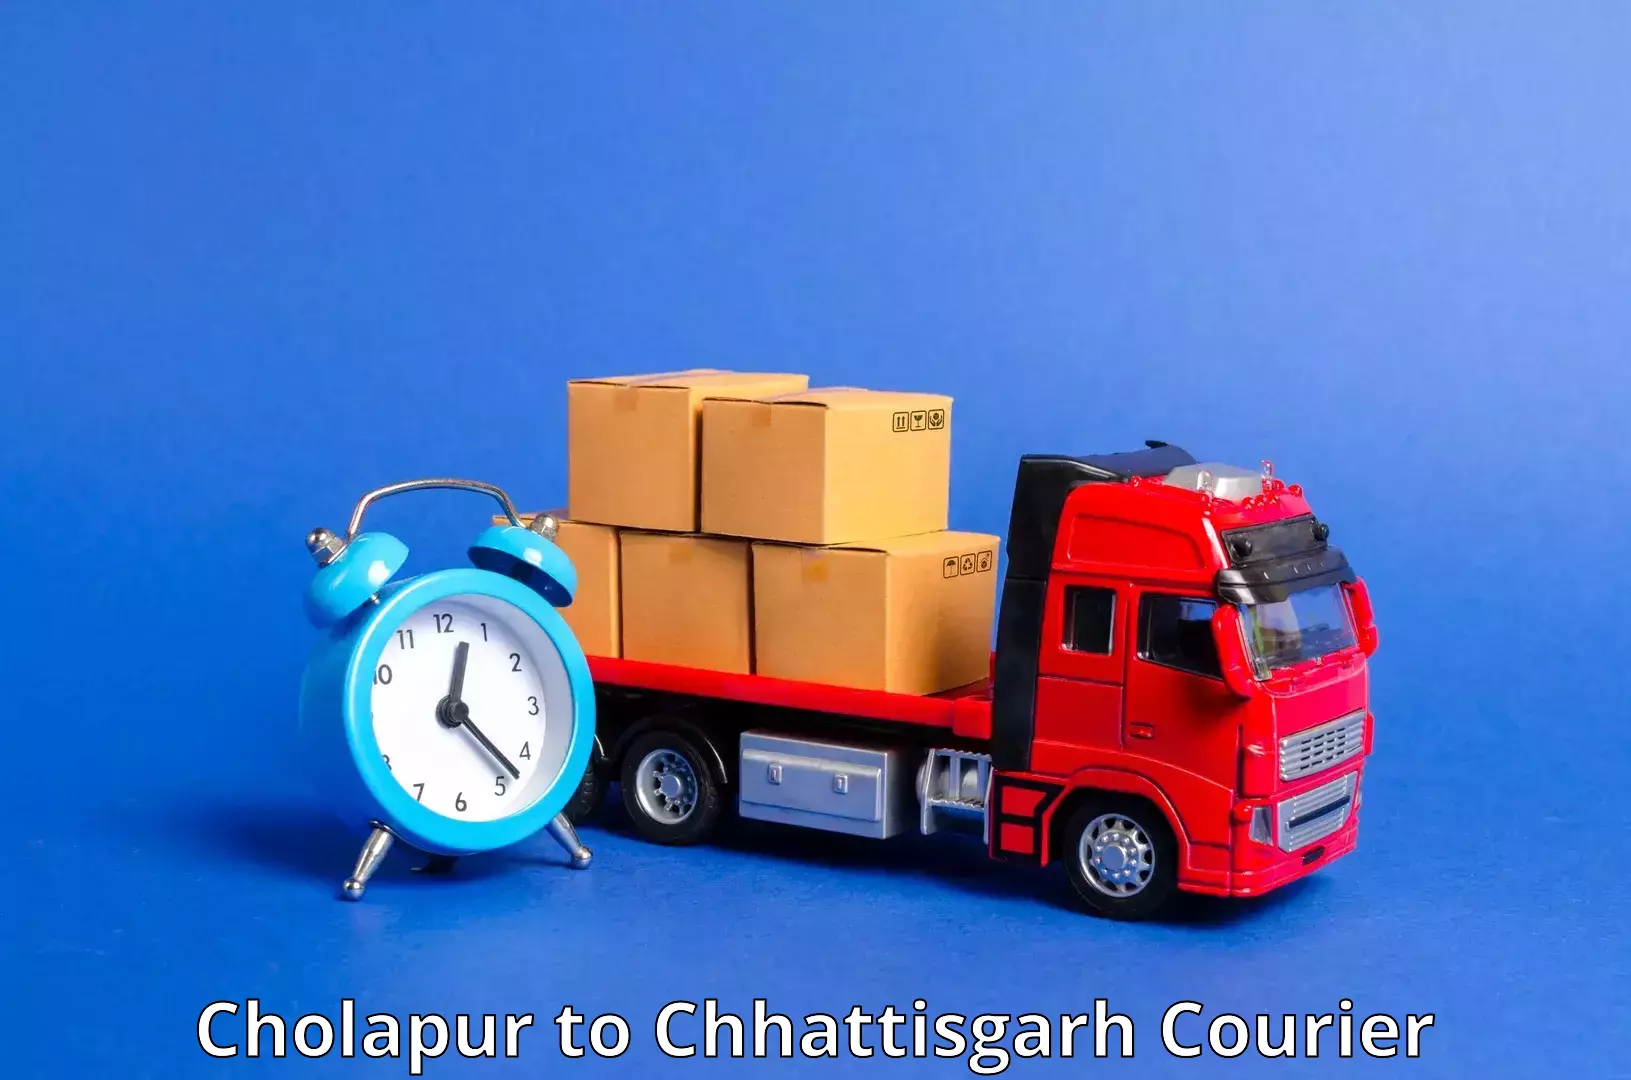 Express postal services Cholapur to Jagdalpur